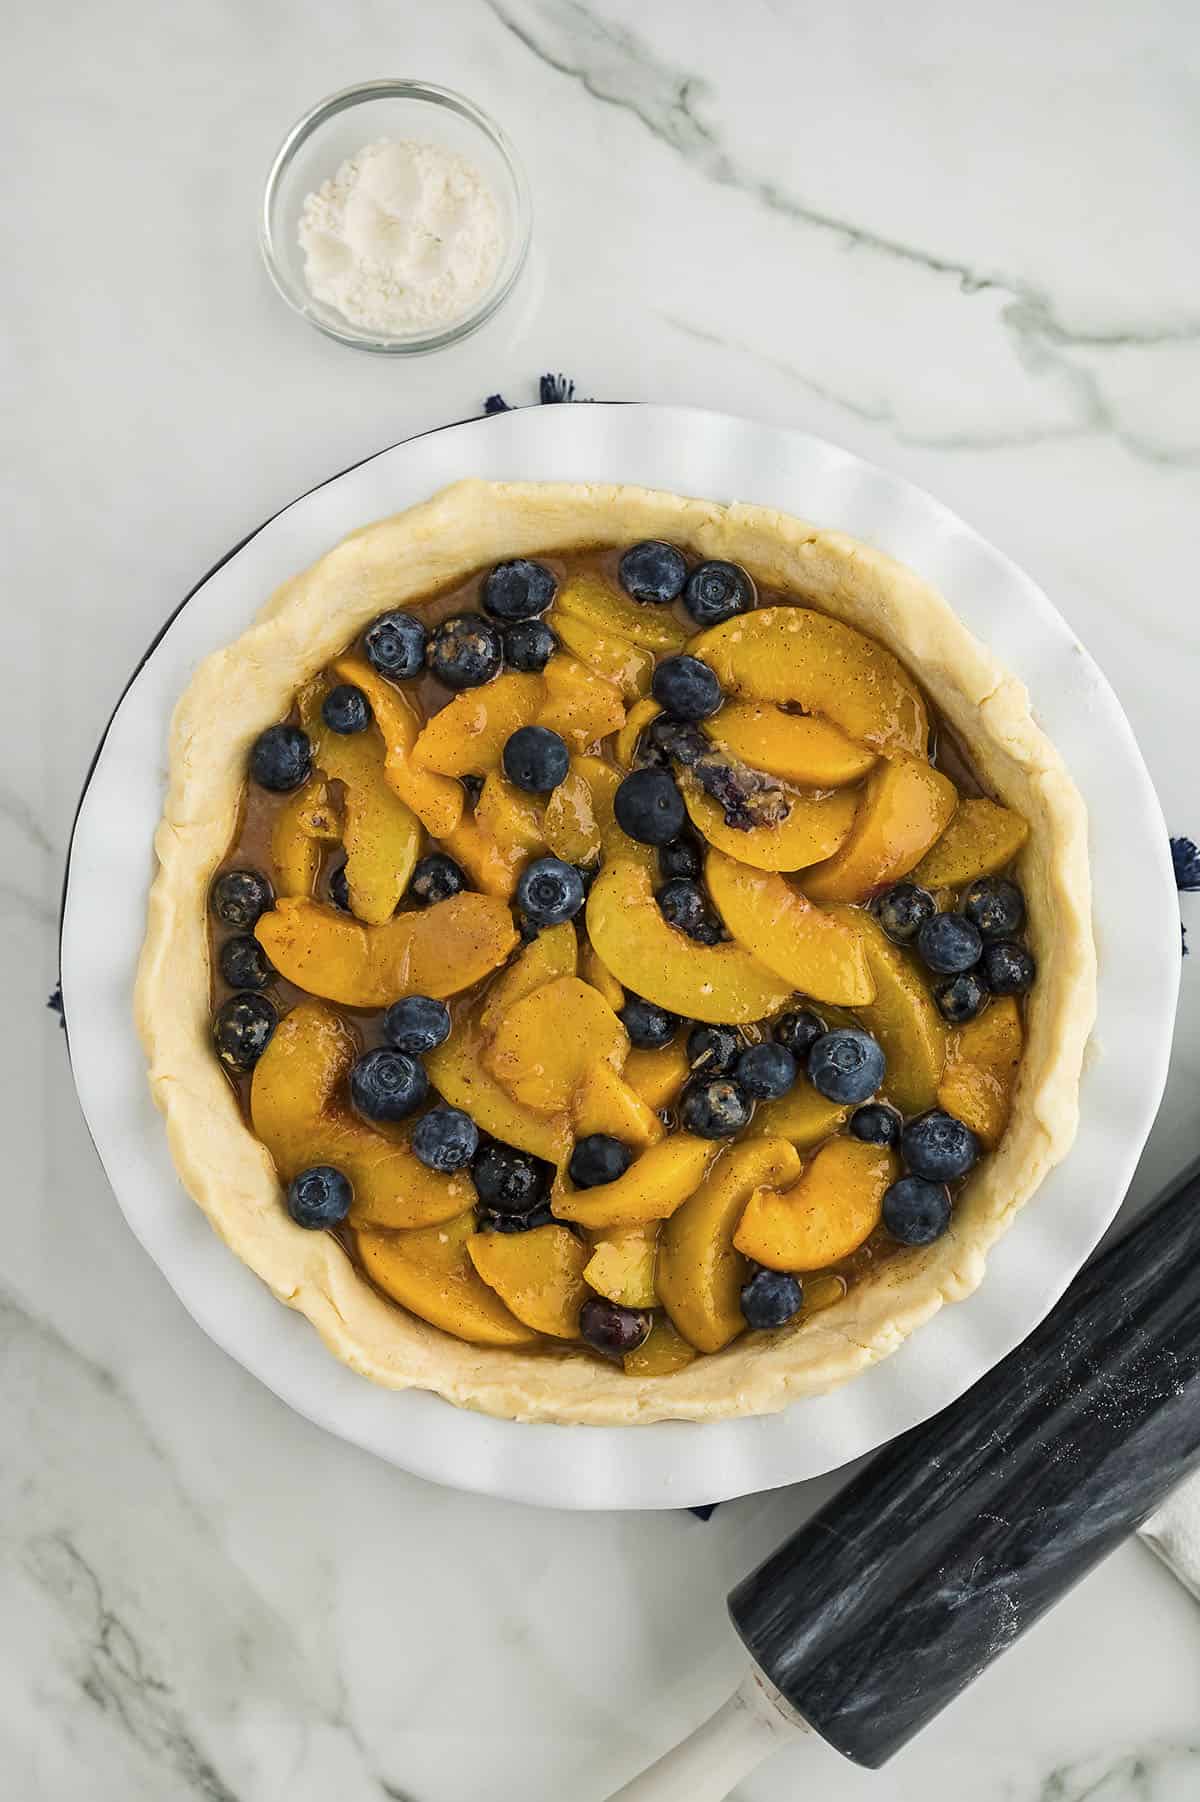 Peach blueberry pie filling in crust.